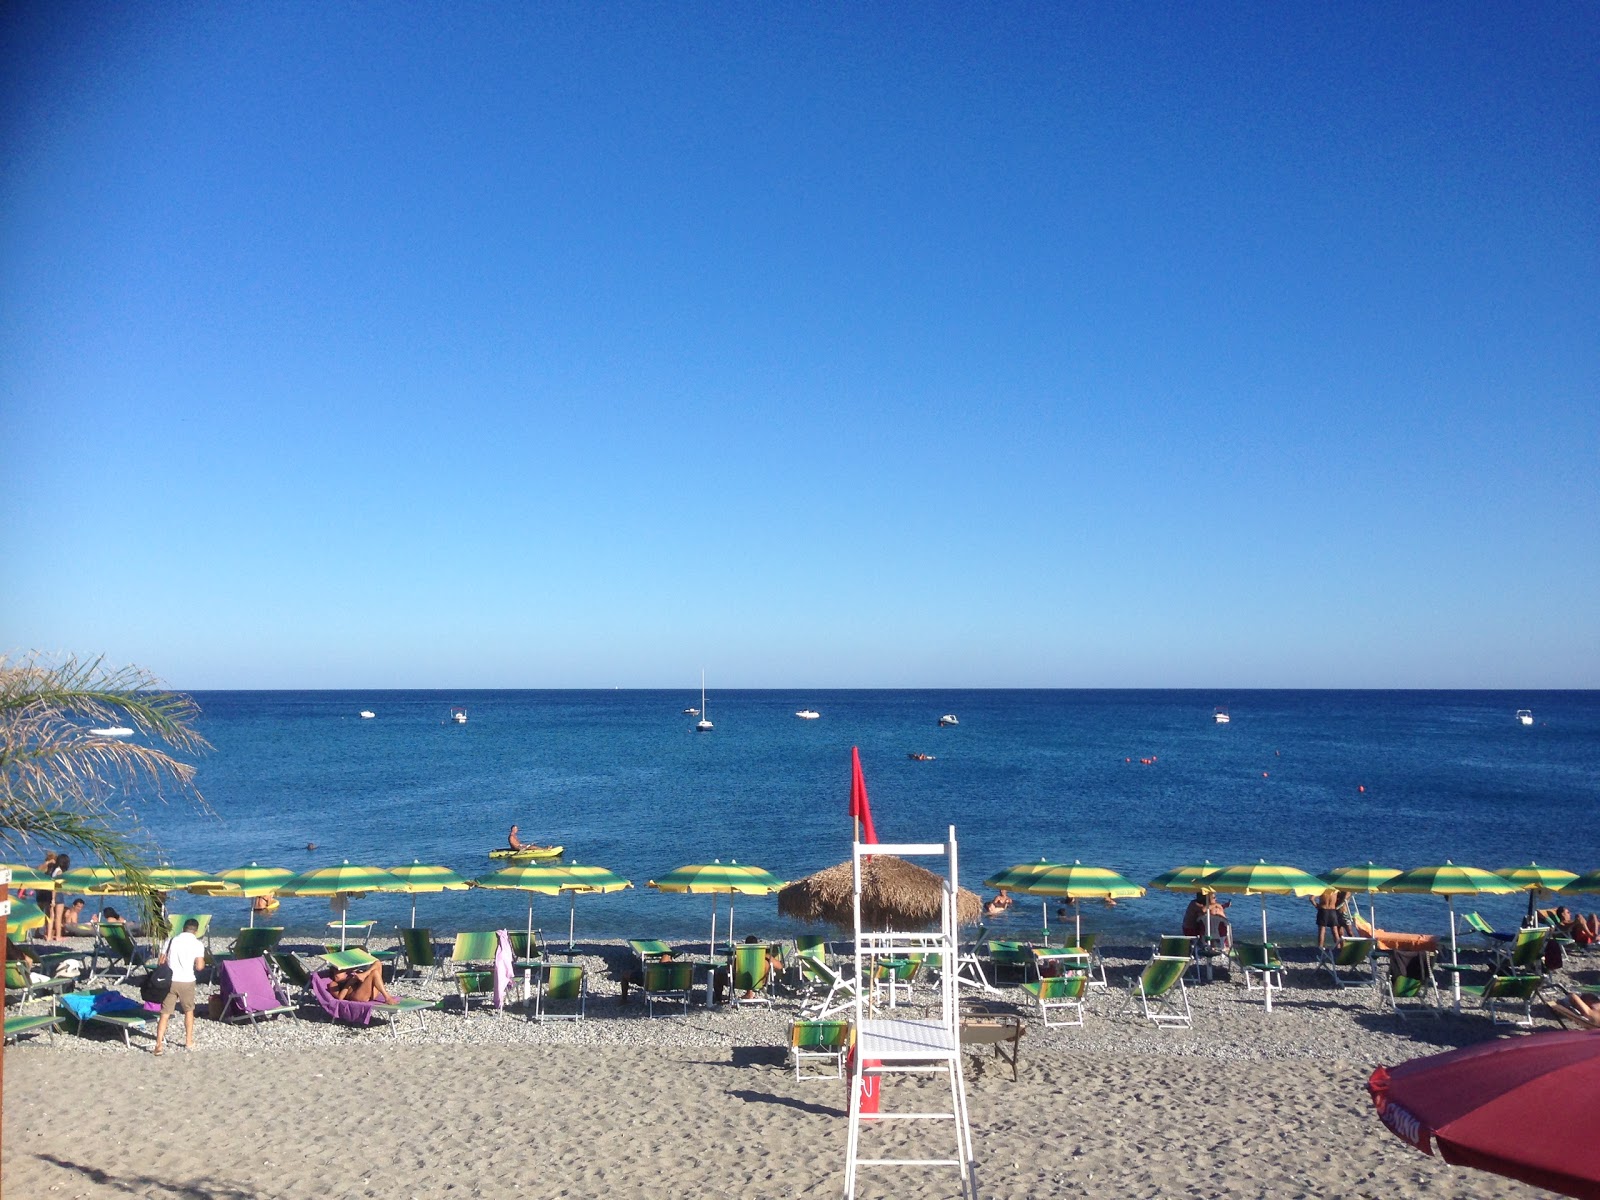 Foto af Bovalino Marina beach - populært sted blandt afslapningskendere